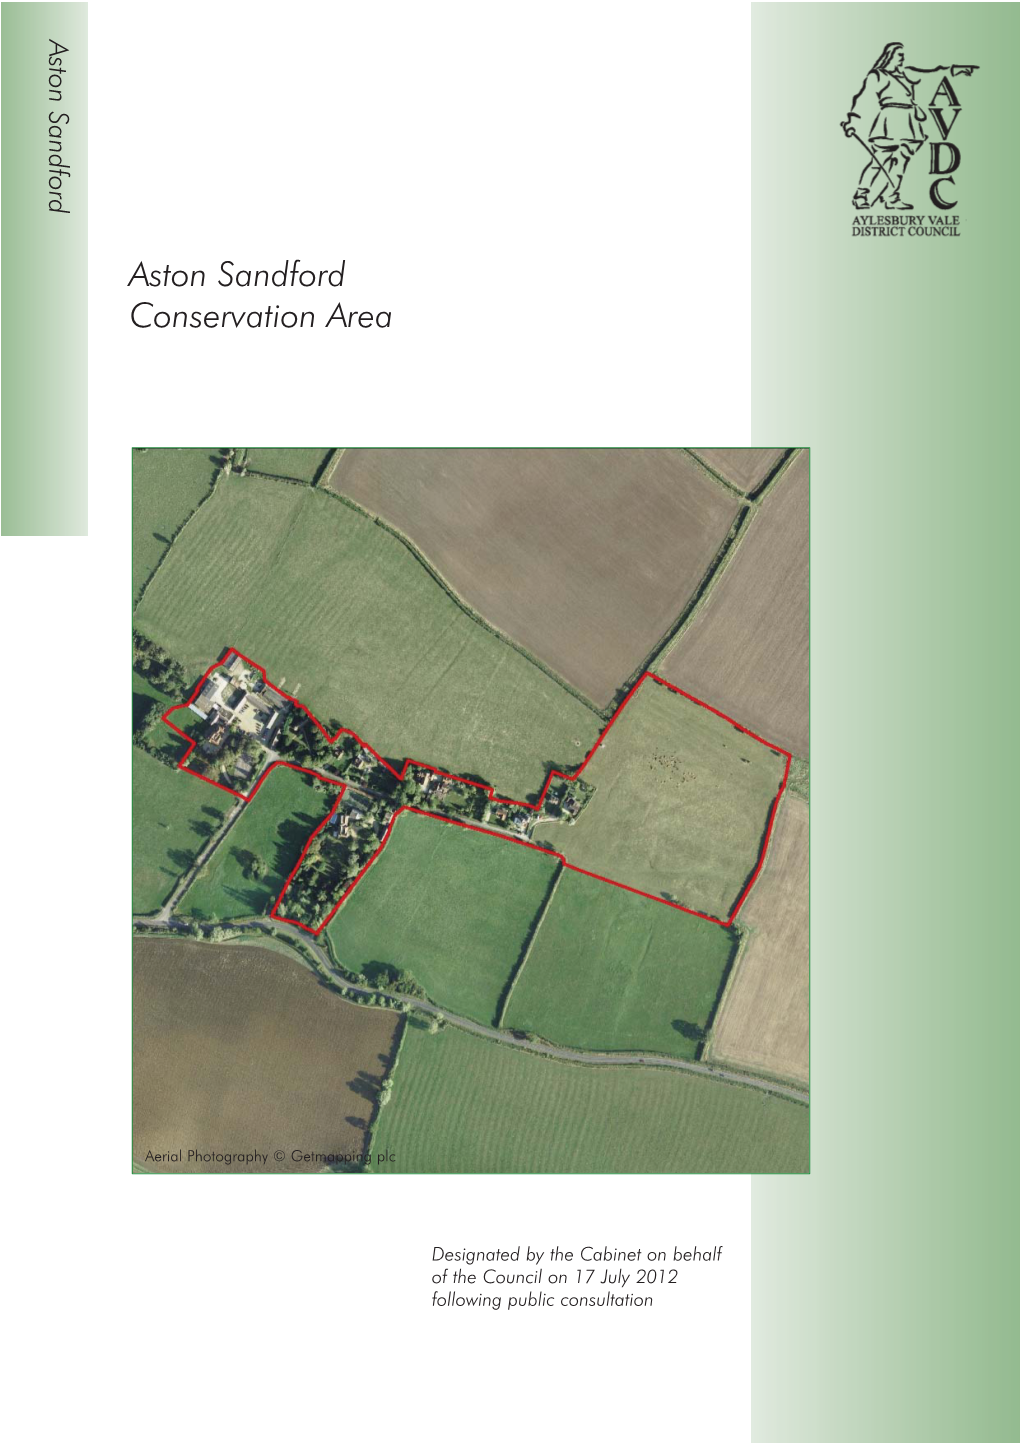 Aston Sandford Conservation Area